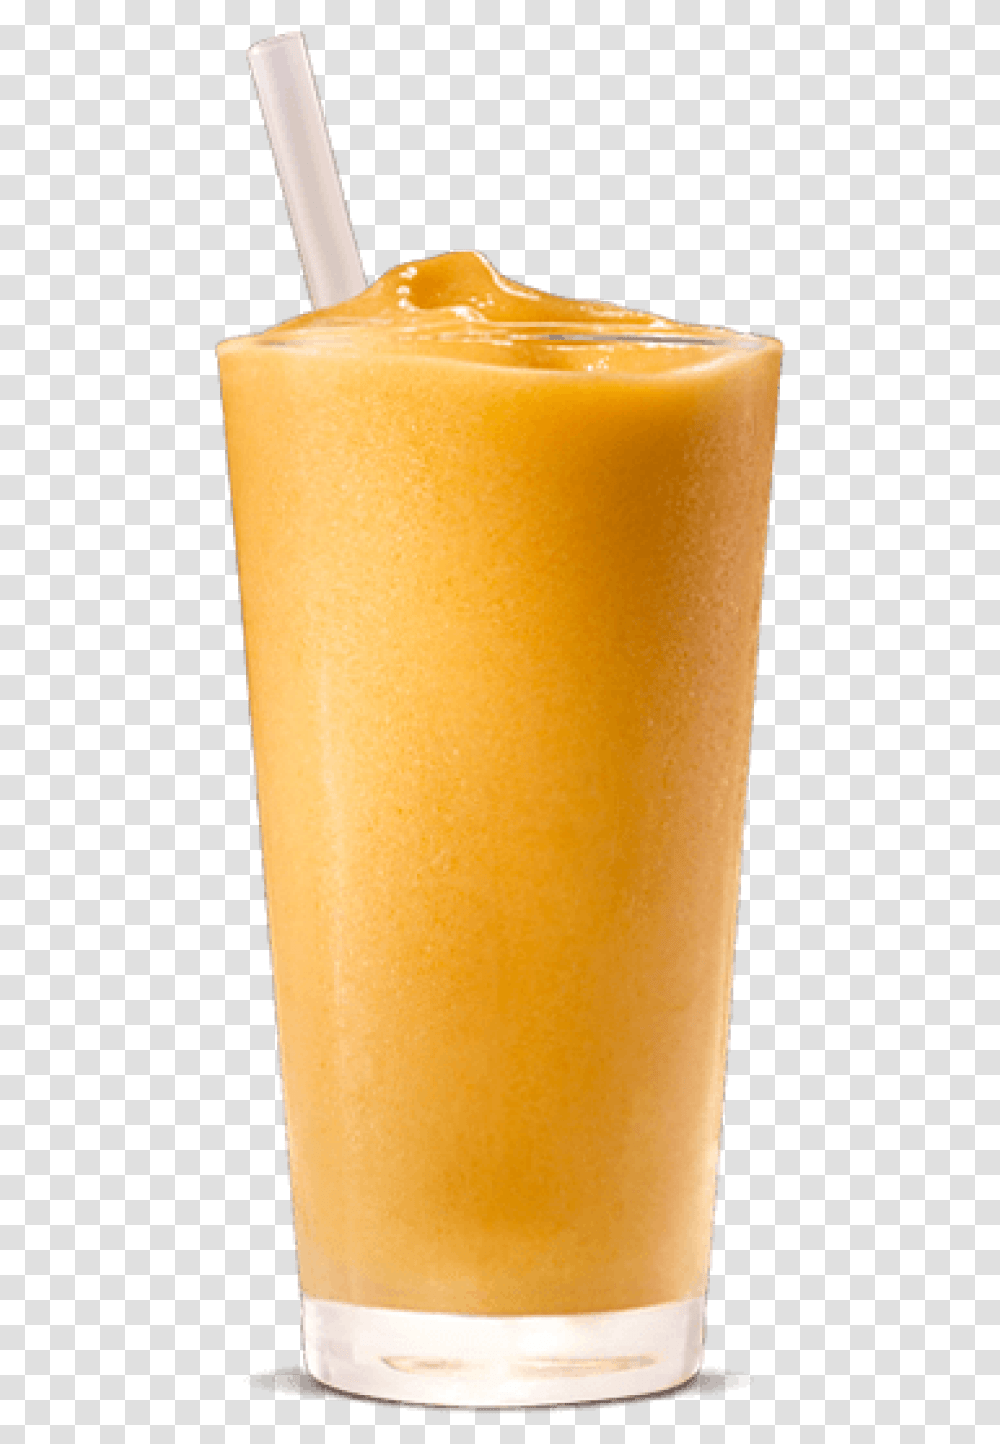 Shake Mango Shake Glass, Juice, Beverage, Drink, Orange Juice Transparent Png